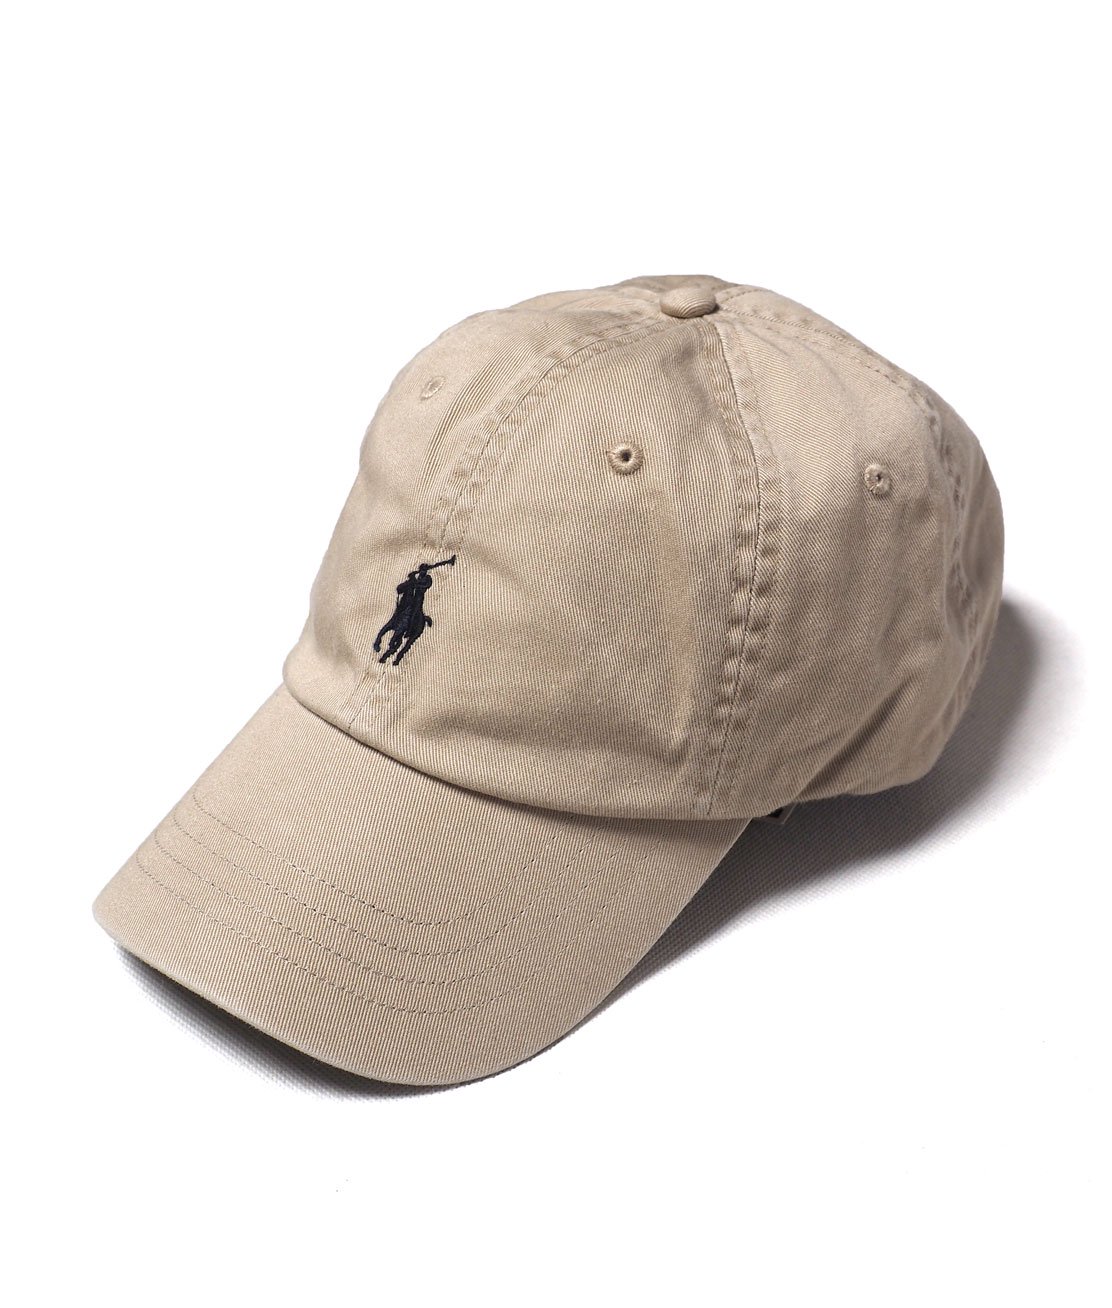 Ralph Lauren】SIGNATURE PONY HAT - NUBUCK キャップ 帽子 CAP